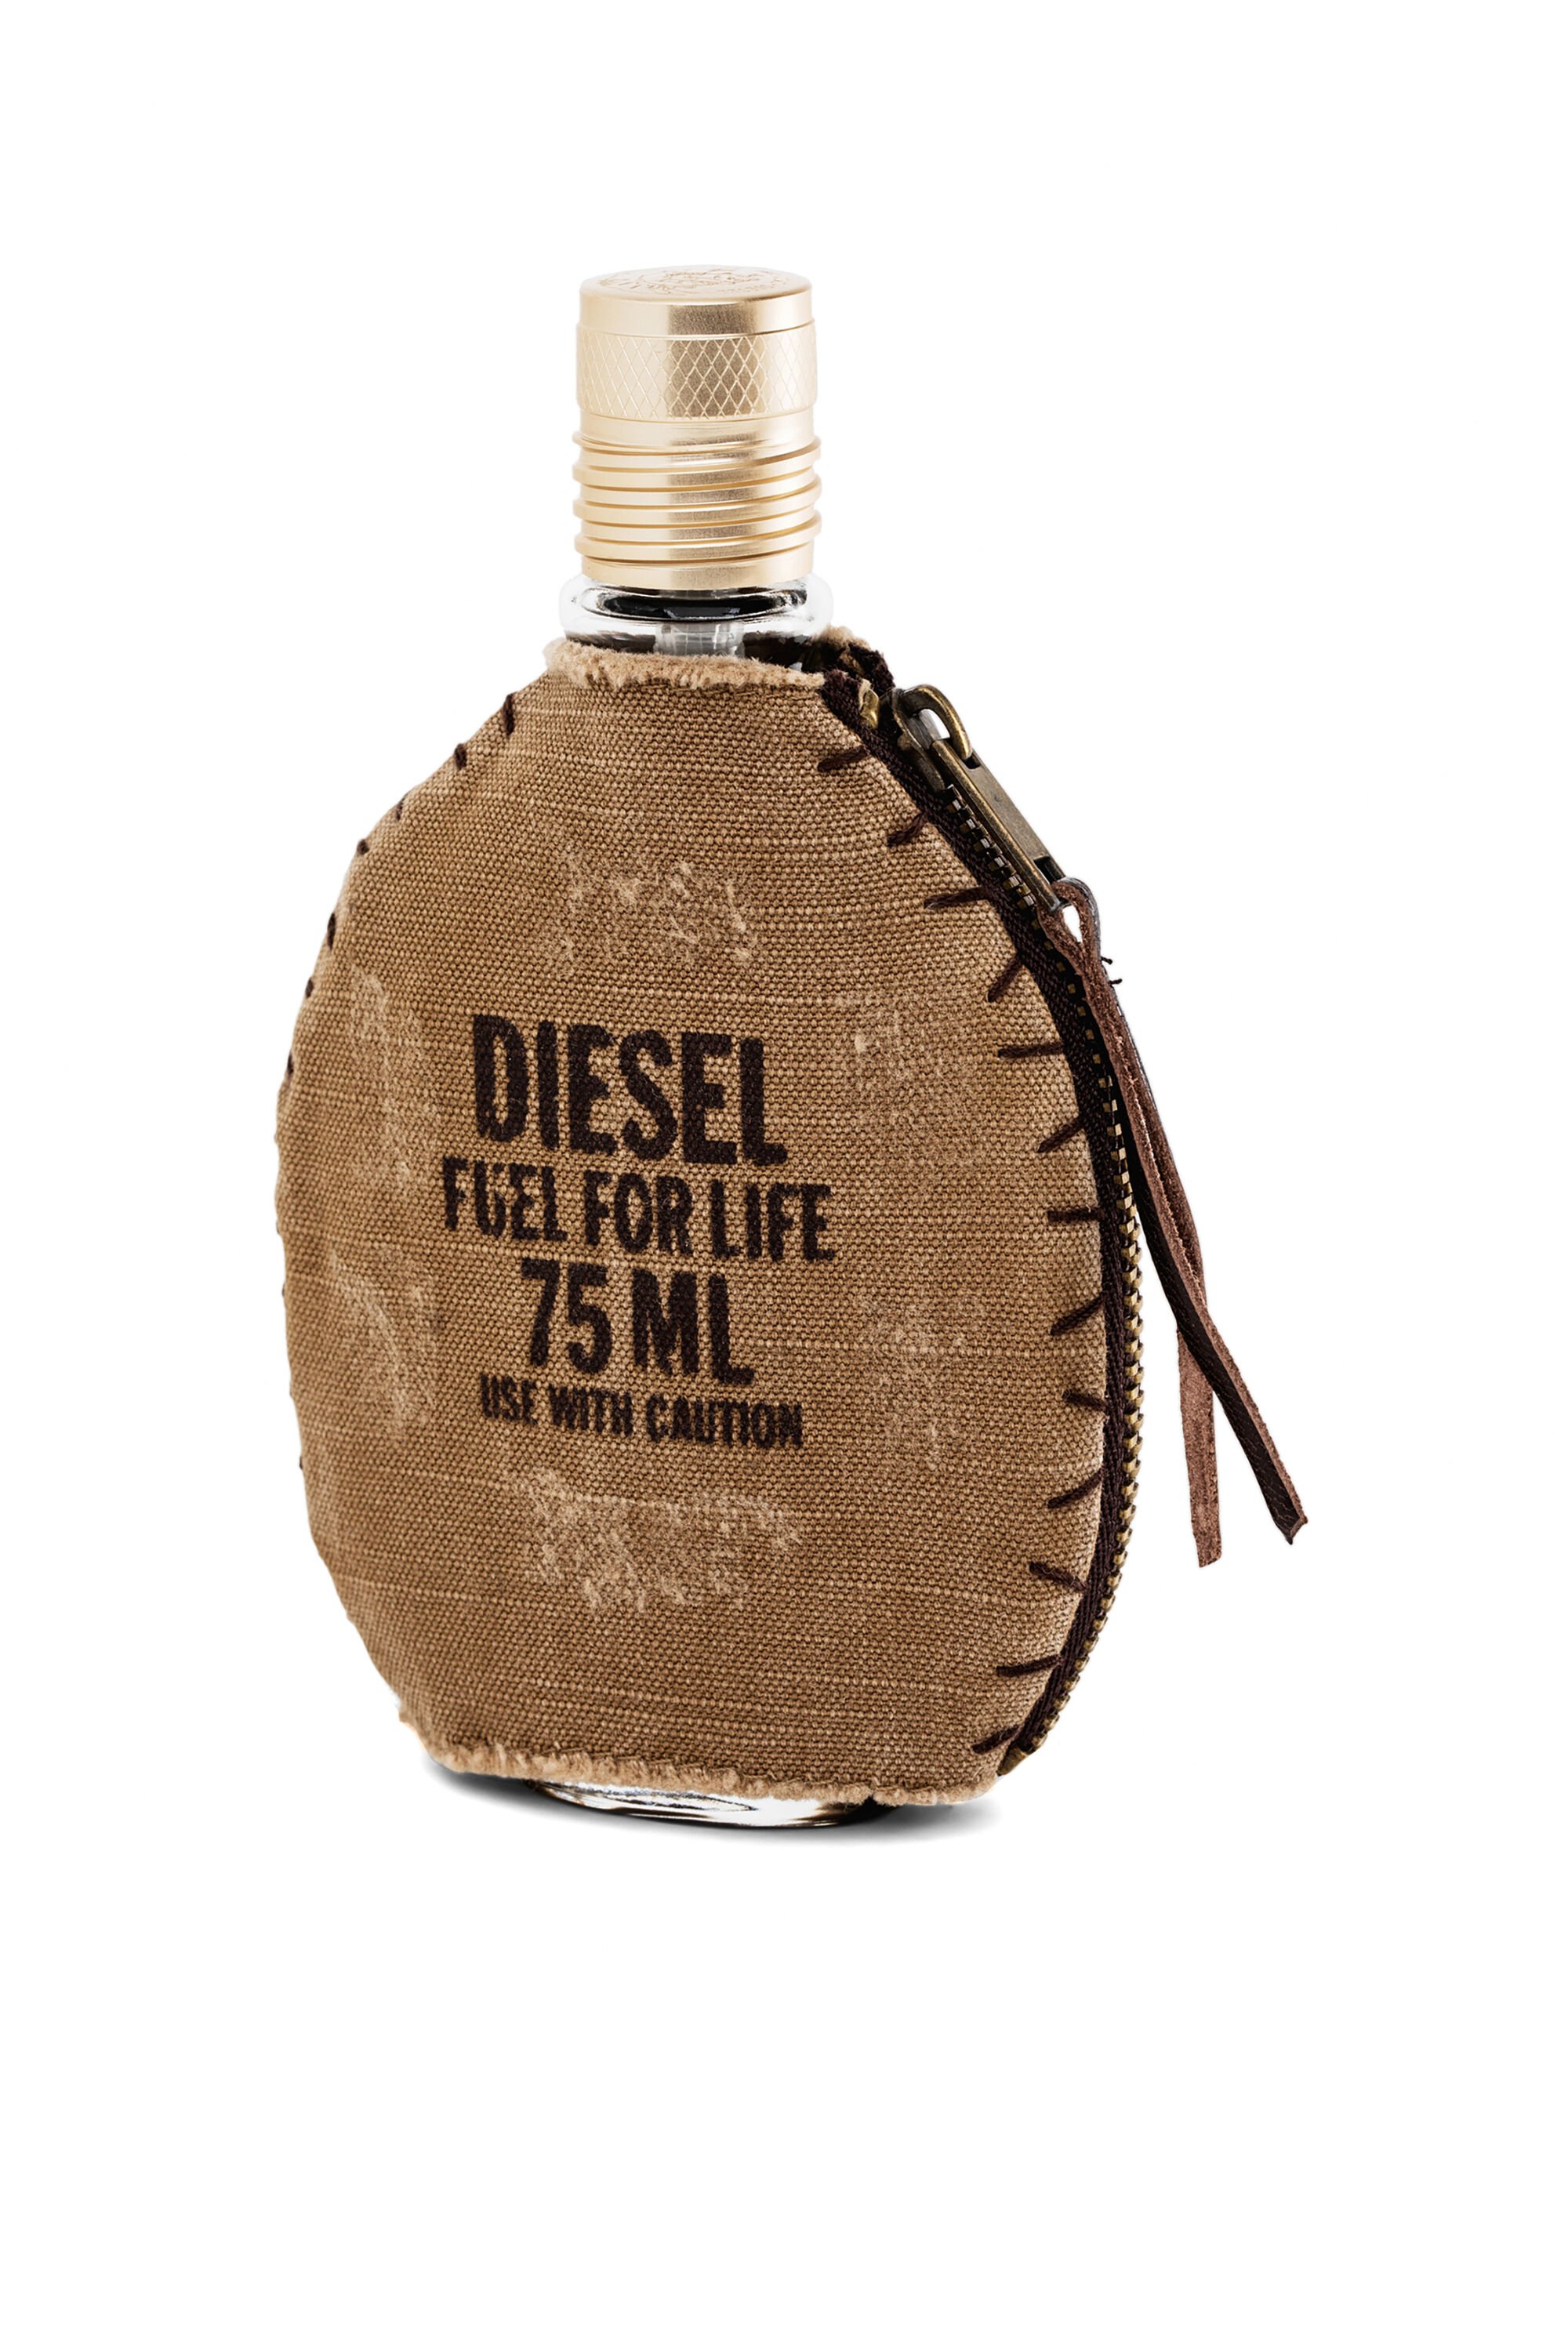 Fuel life man 75ml, eau de toilette | Diesel